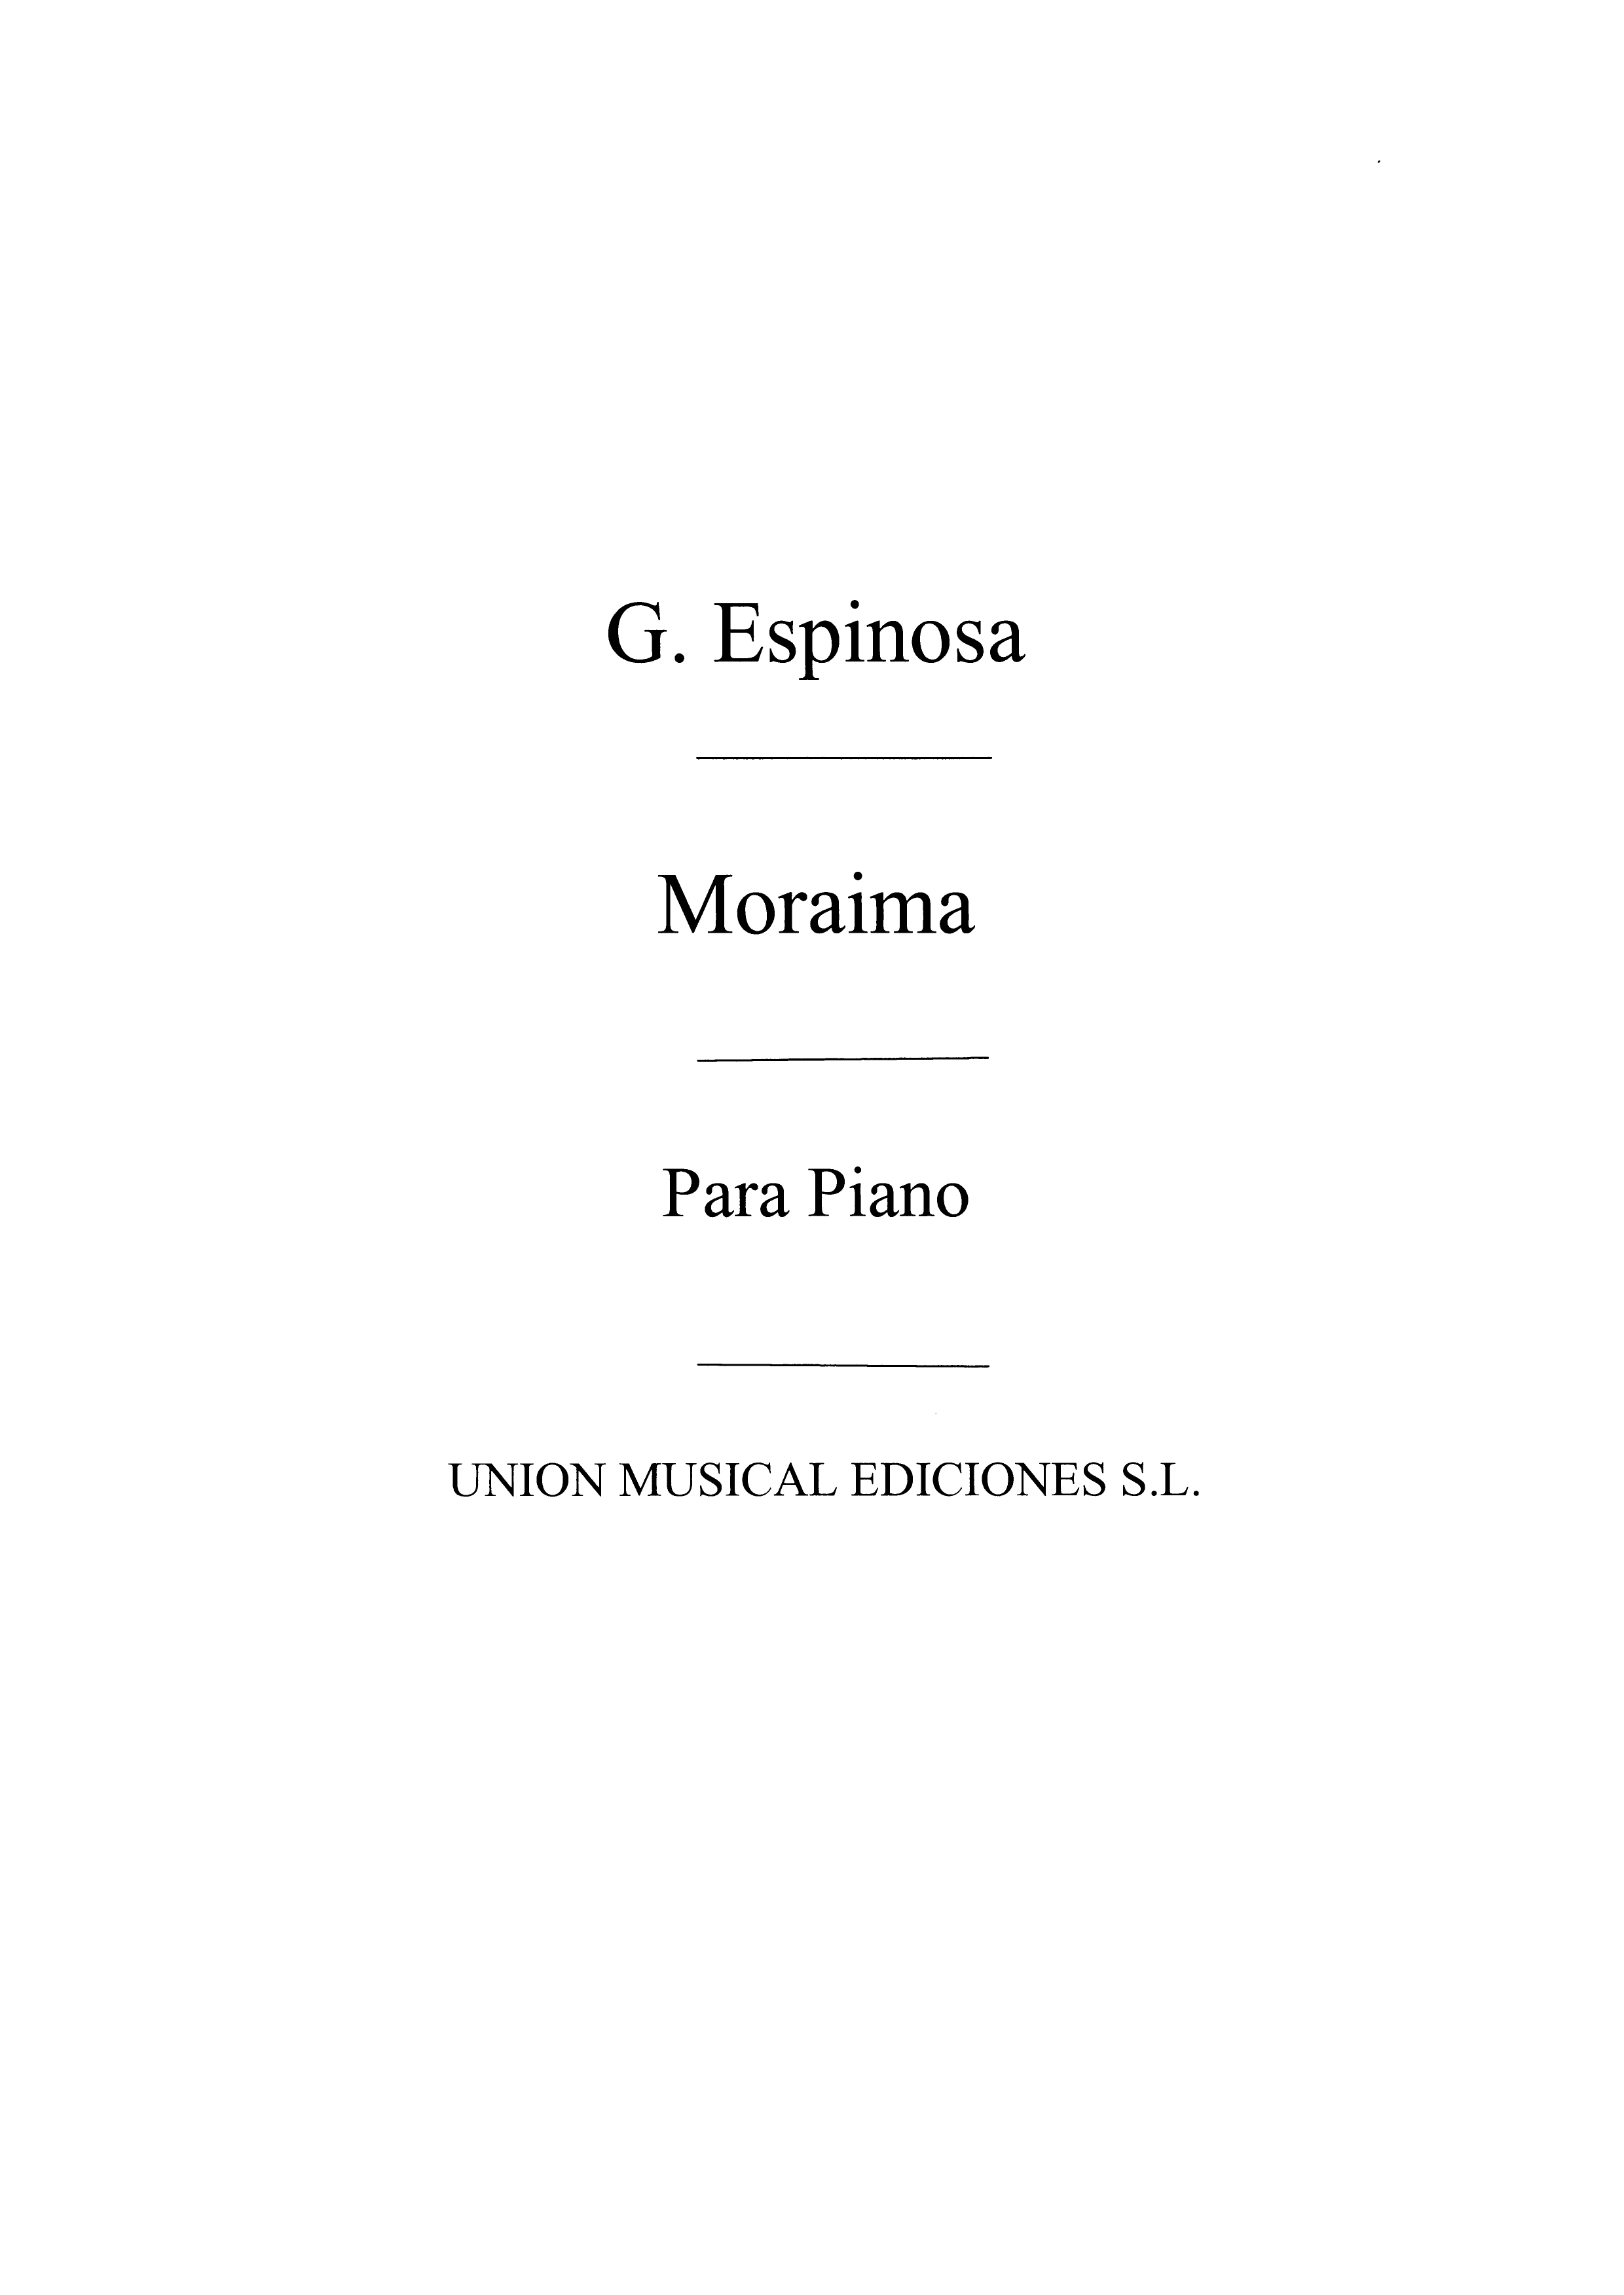 Gaspar Espinosa: Moraima Capricho Caracteristico: Piano: Instrumental Work